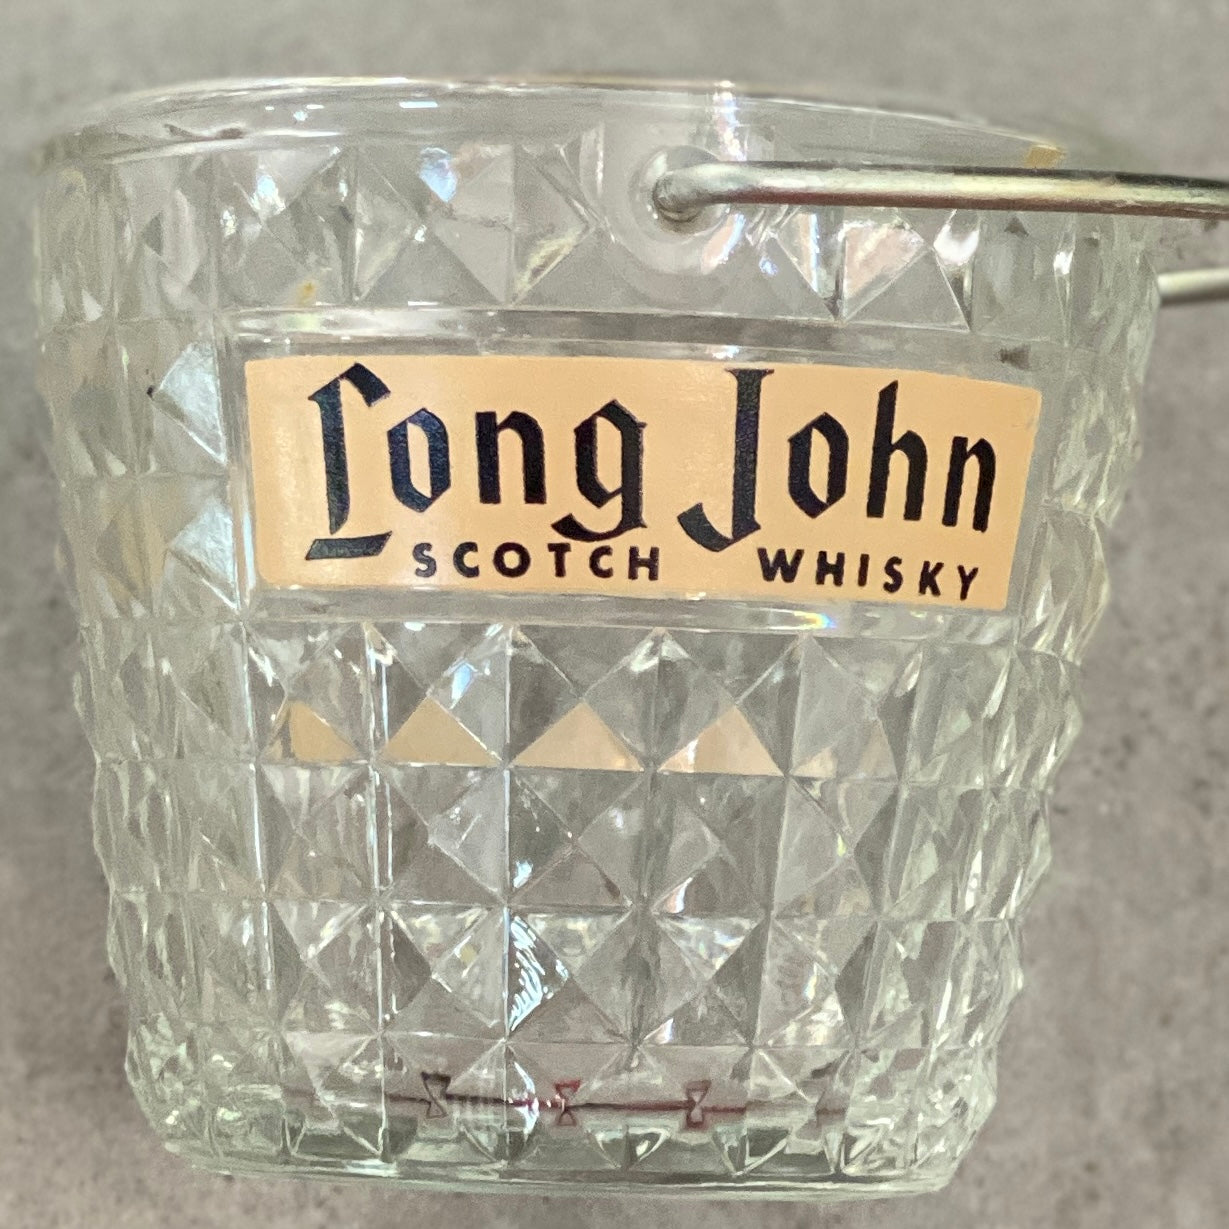 Seau à glaçons Vintage - Long John Whisky - En verre - petit modèle